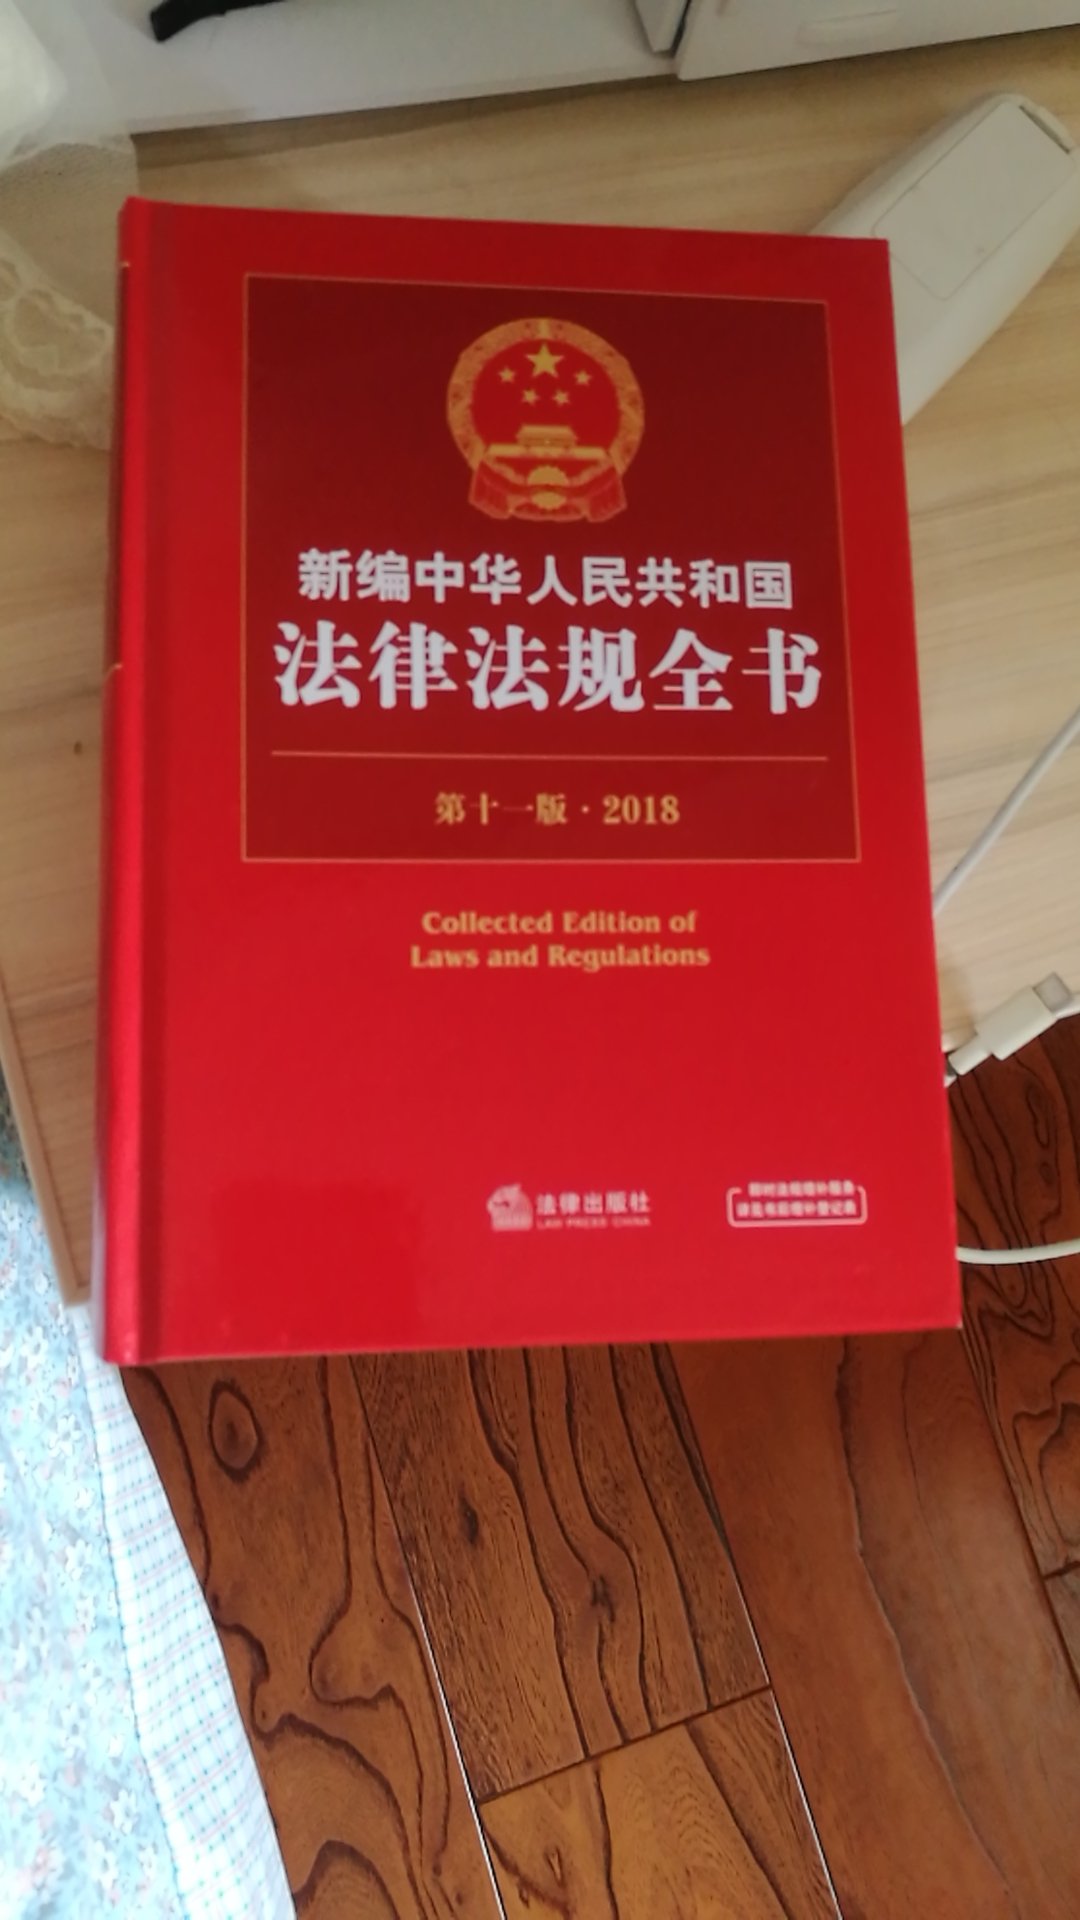 中华人民共和国法律法规全书非常实用，备在家里可以学习很多知识，值得拥有